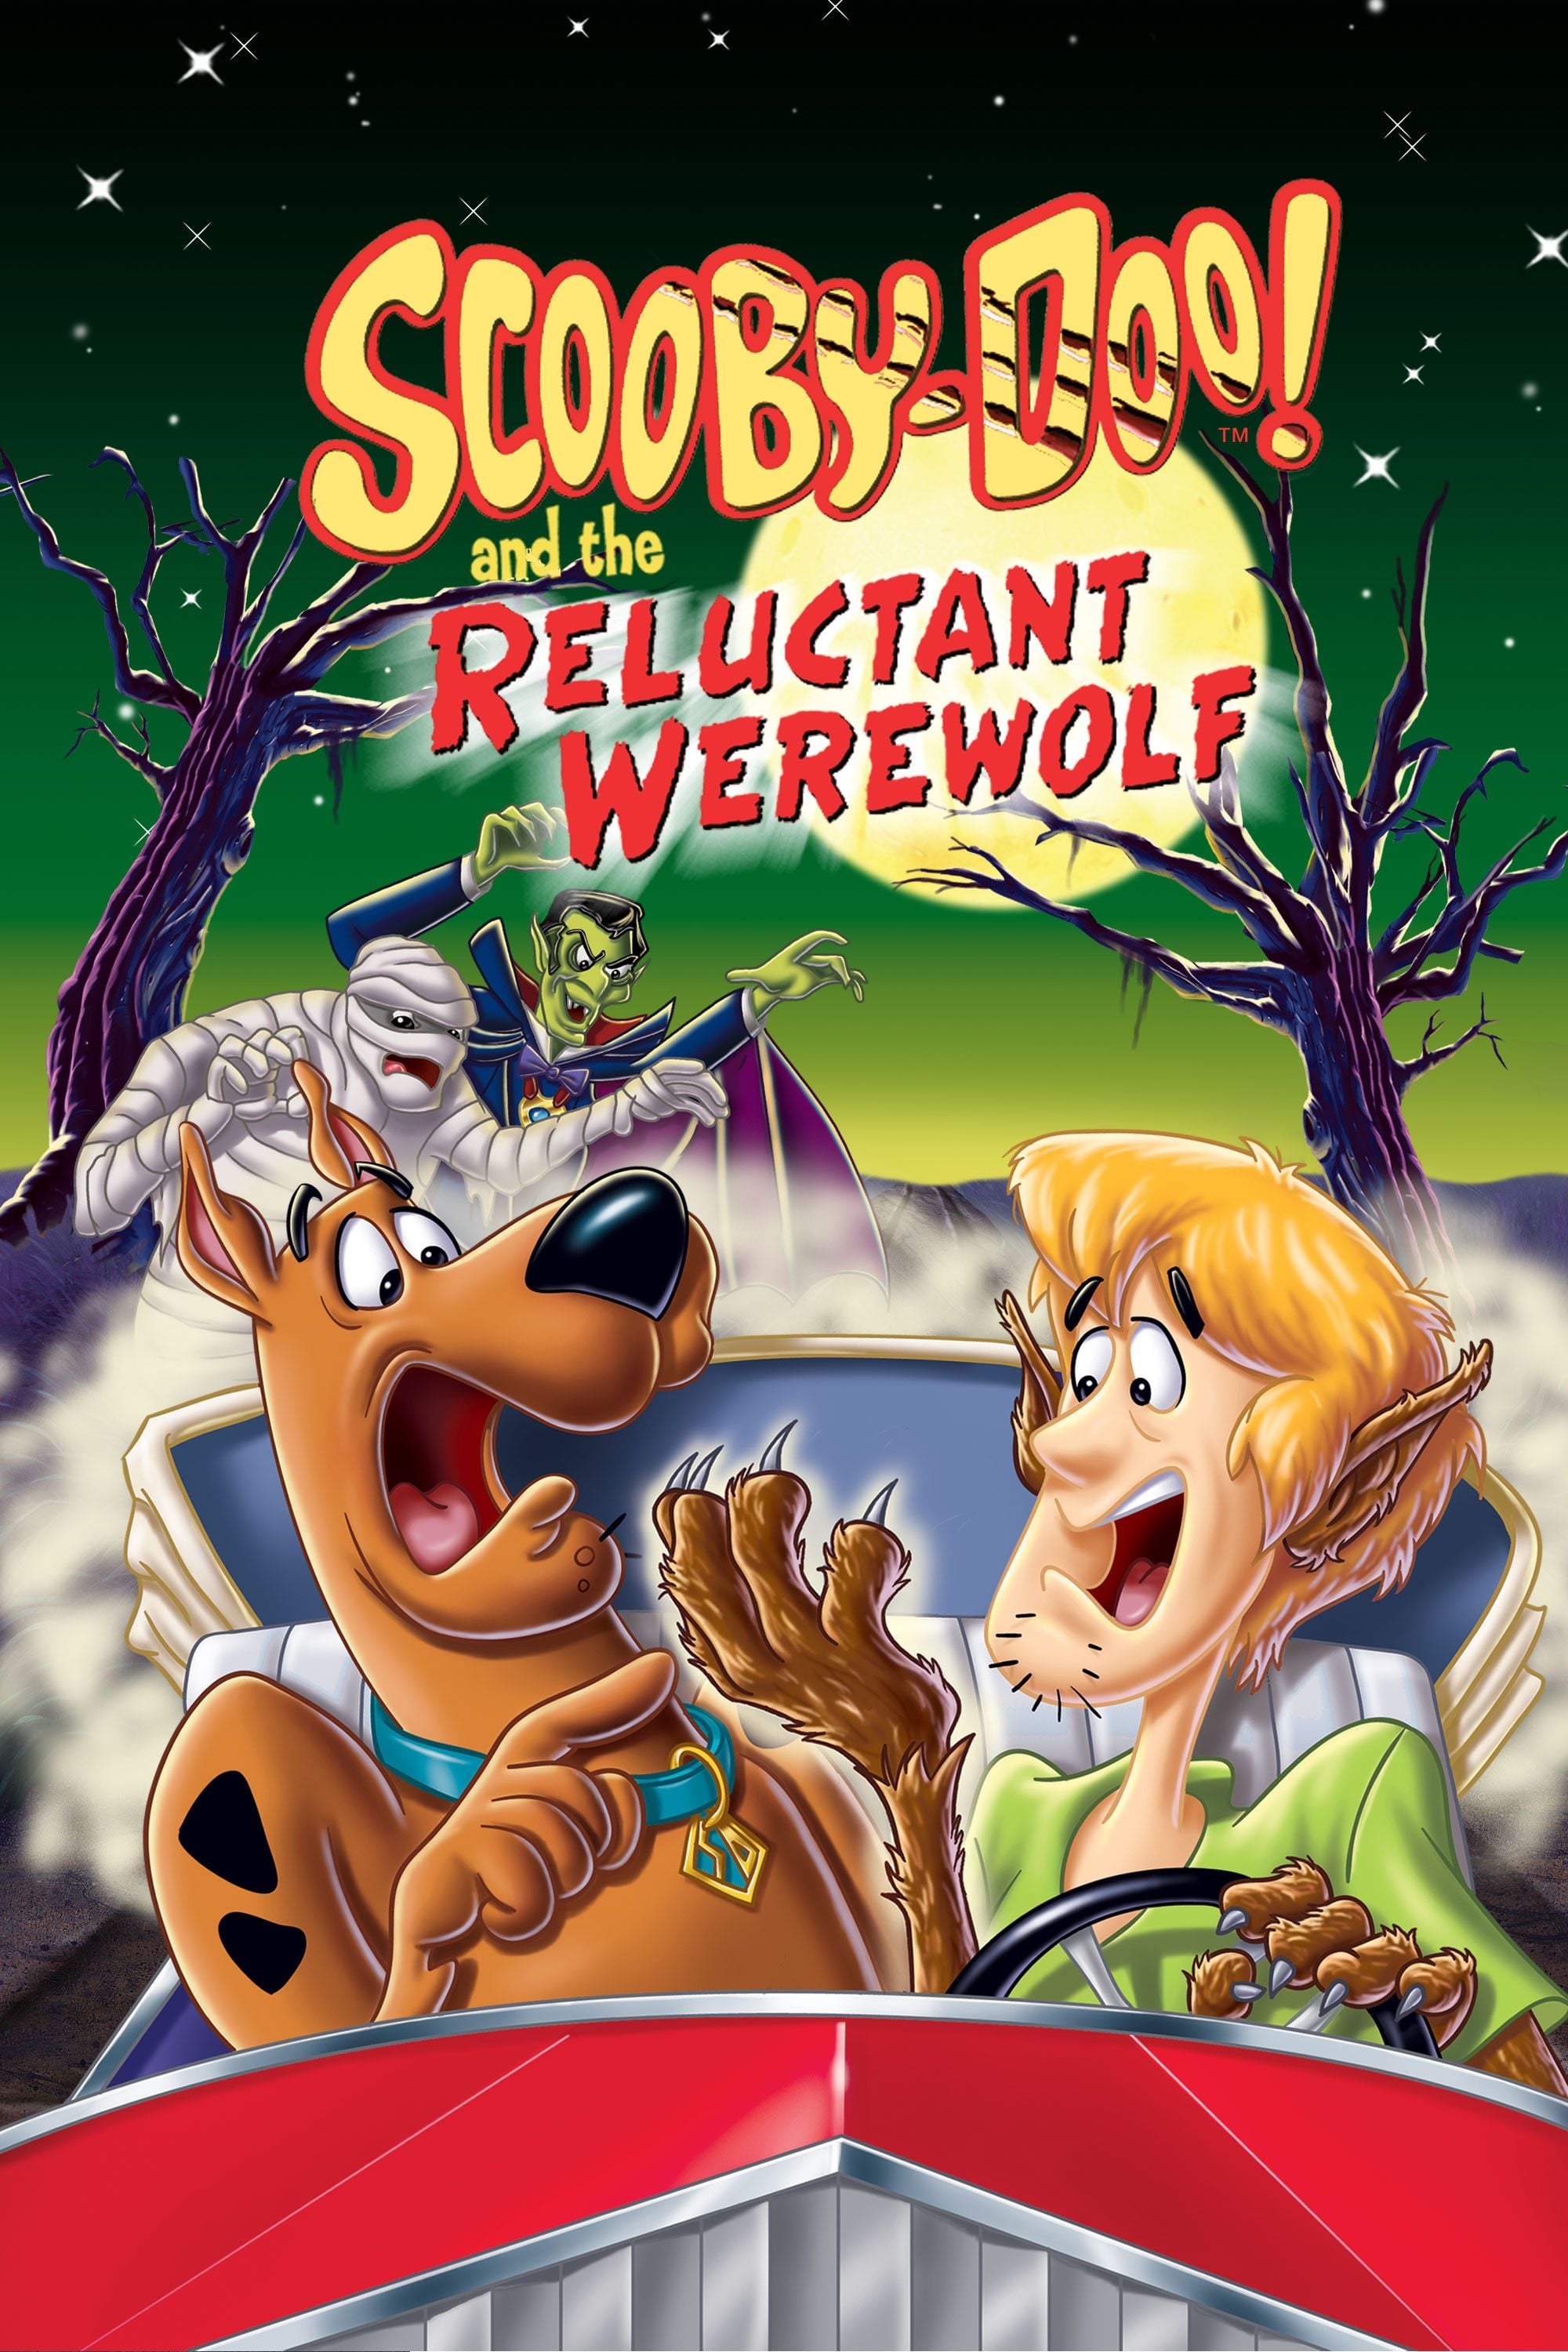 Scooby-Doo! und der widerspenstige Werwolf (1988)